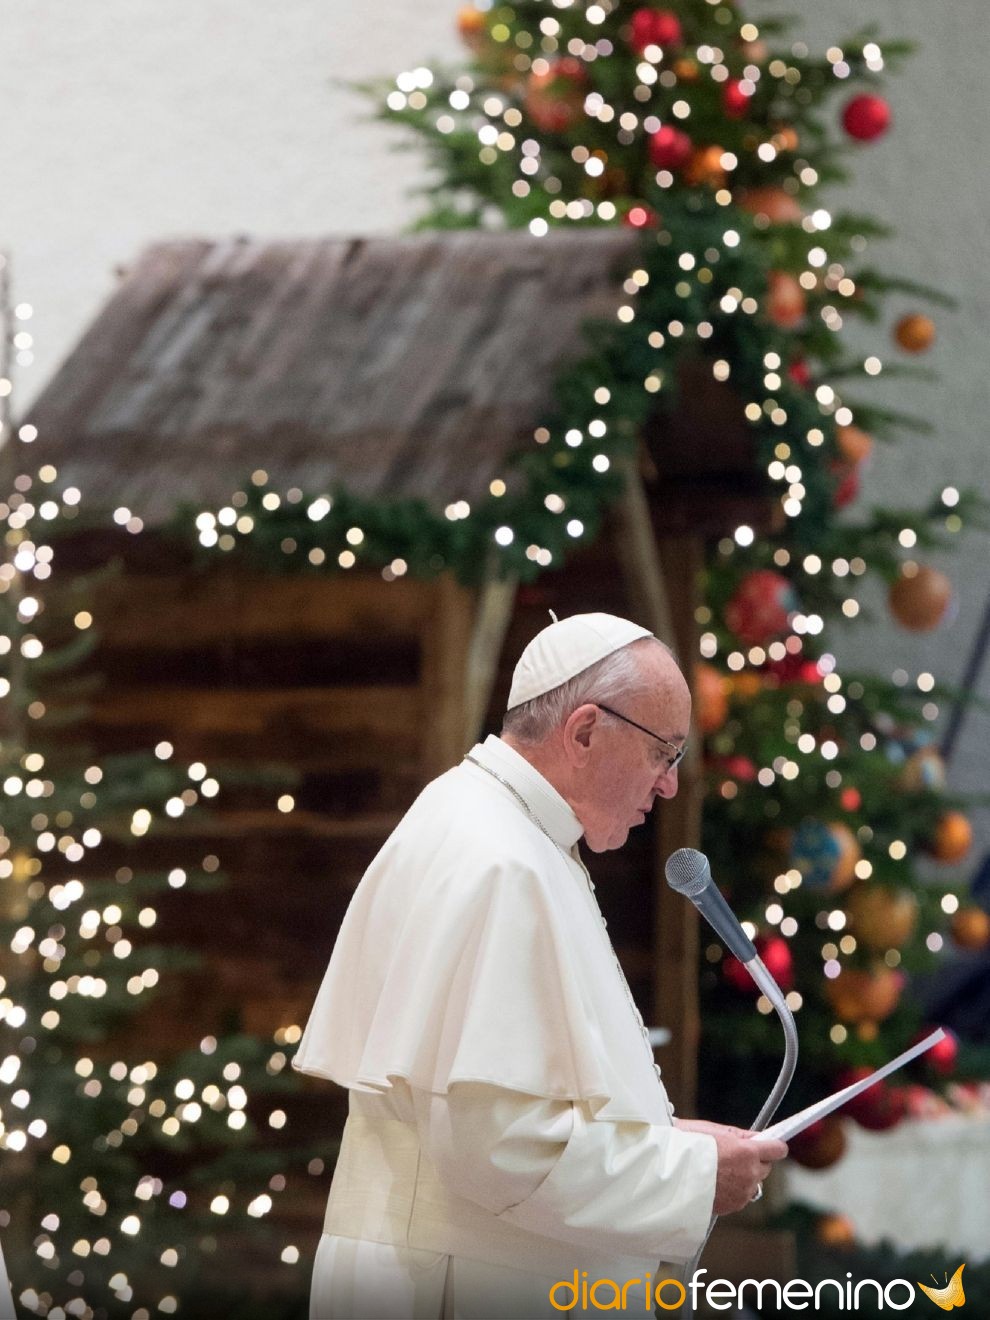 Frases de Navidad del Papa Francisco para vivir esta época con ilusión